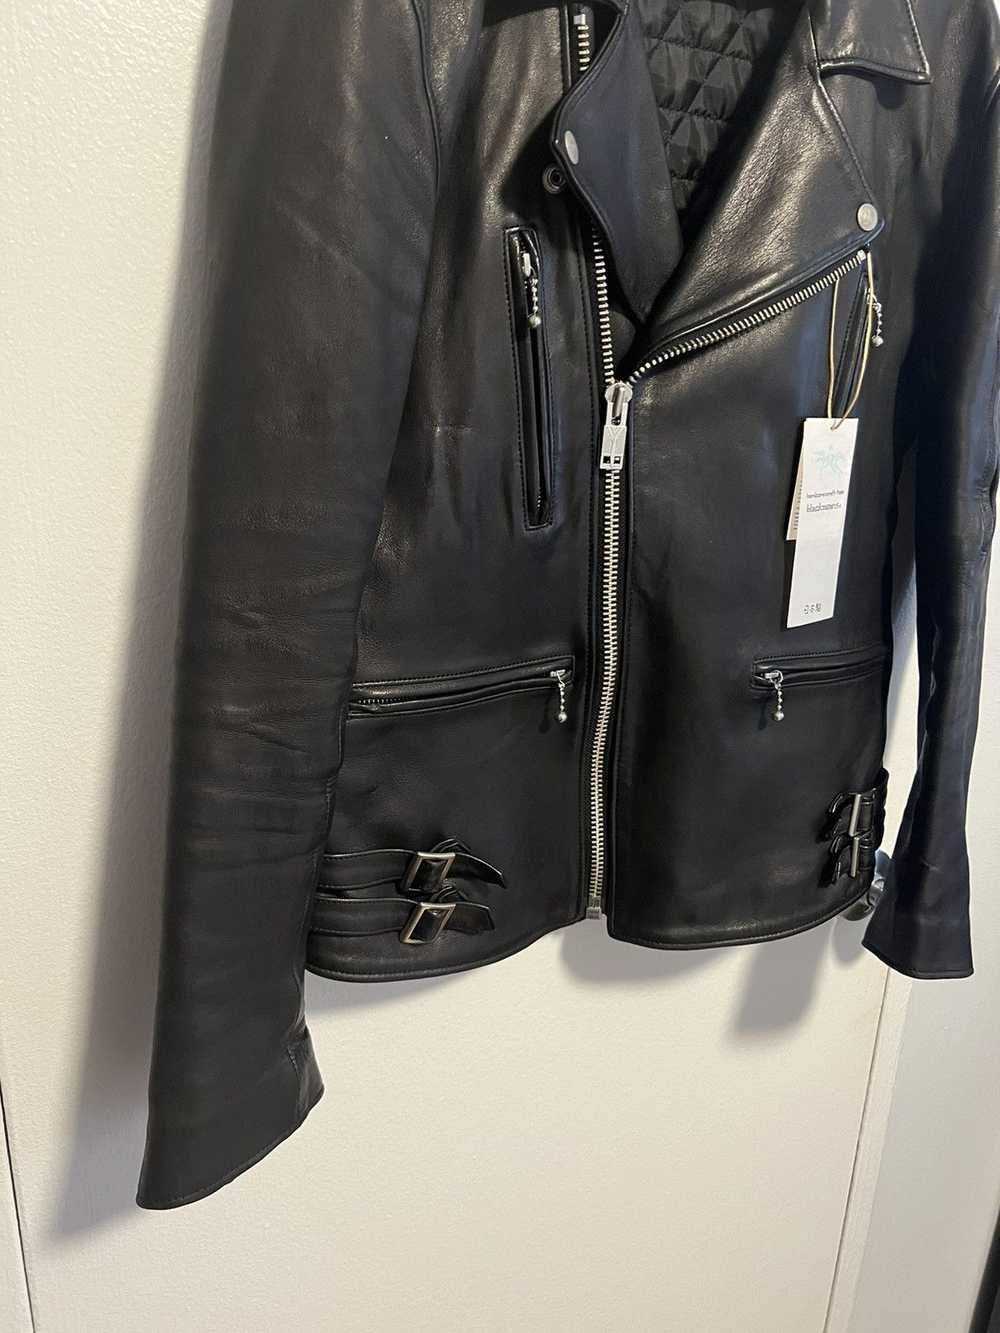 Blackmeans Double Rider Leather Jacket - Size 5 - image 4